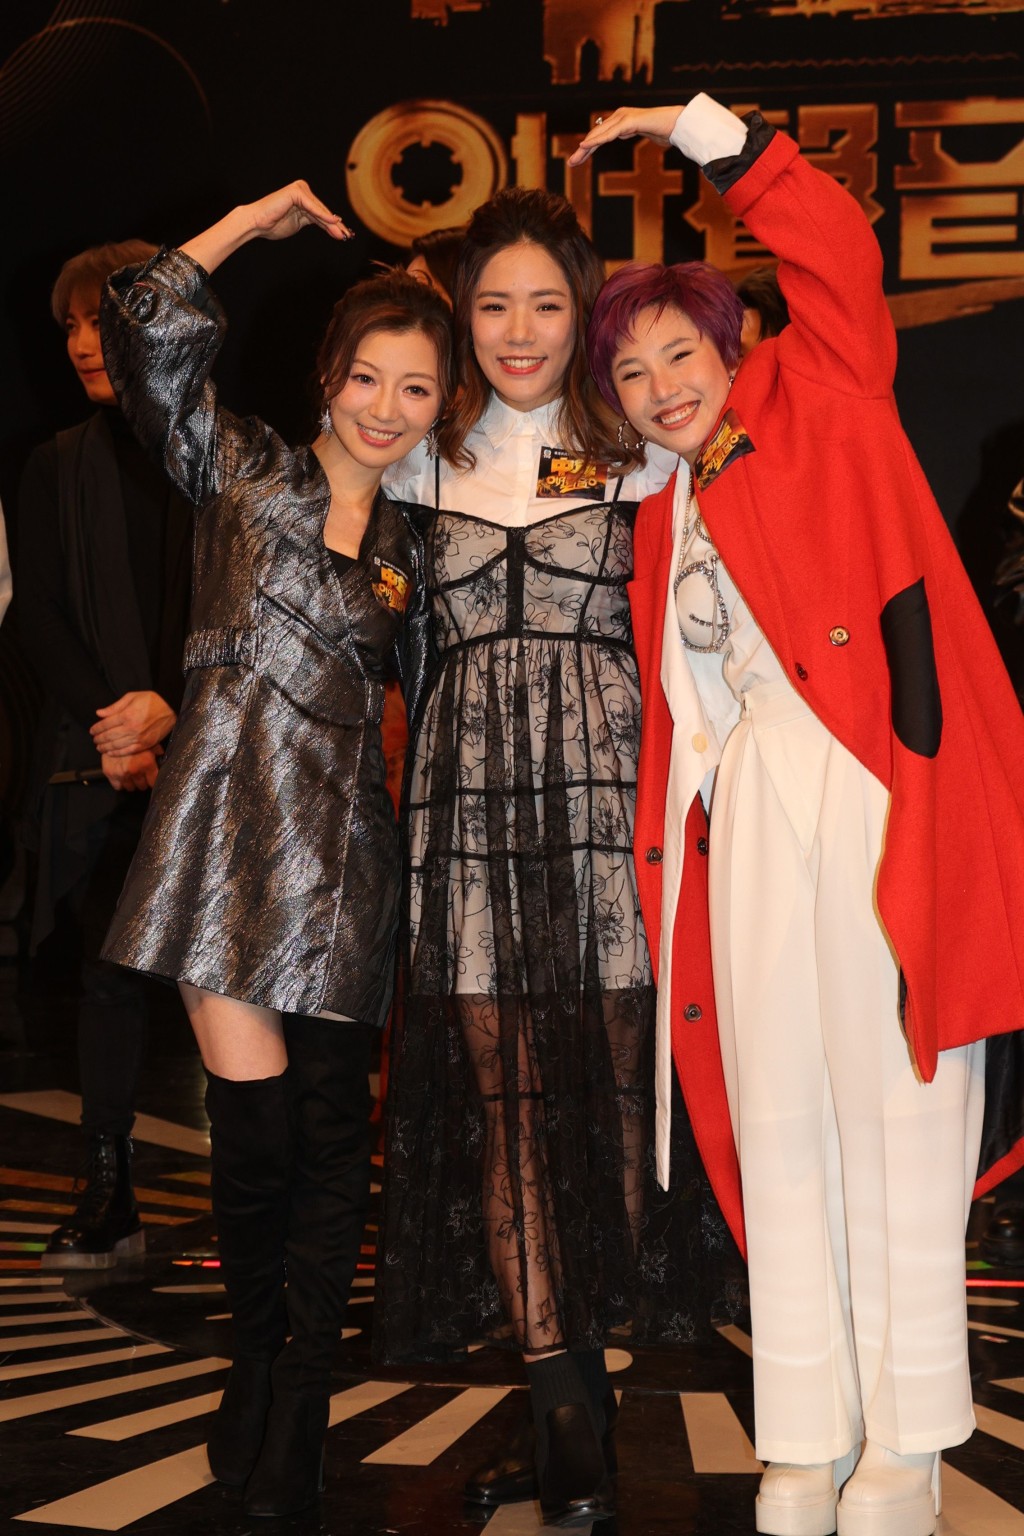 三位女生陈蒨葶、林若盈和陈俞霏说参加比赛最开心是赢到宝贵的友谊。